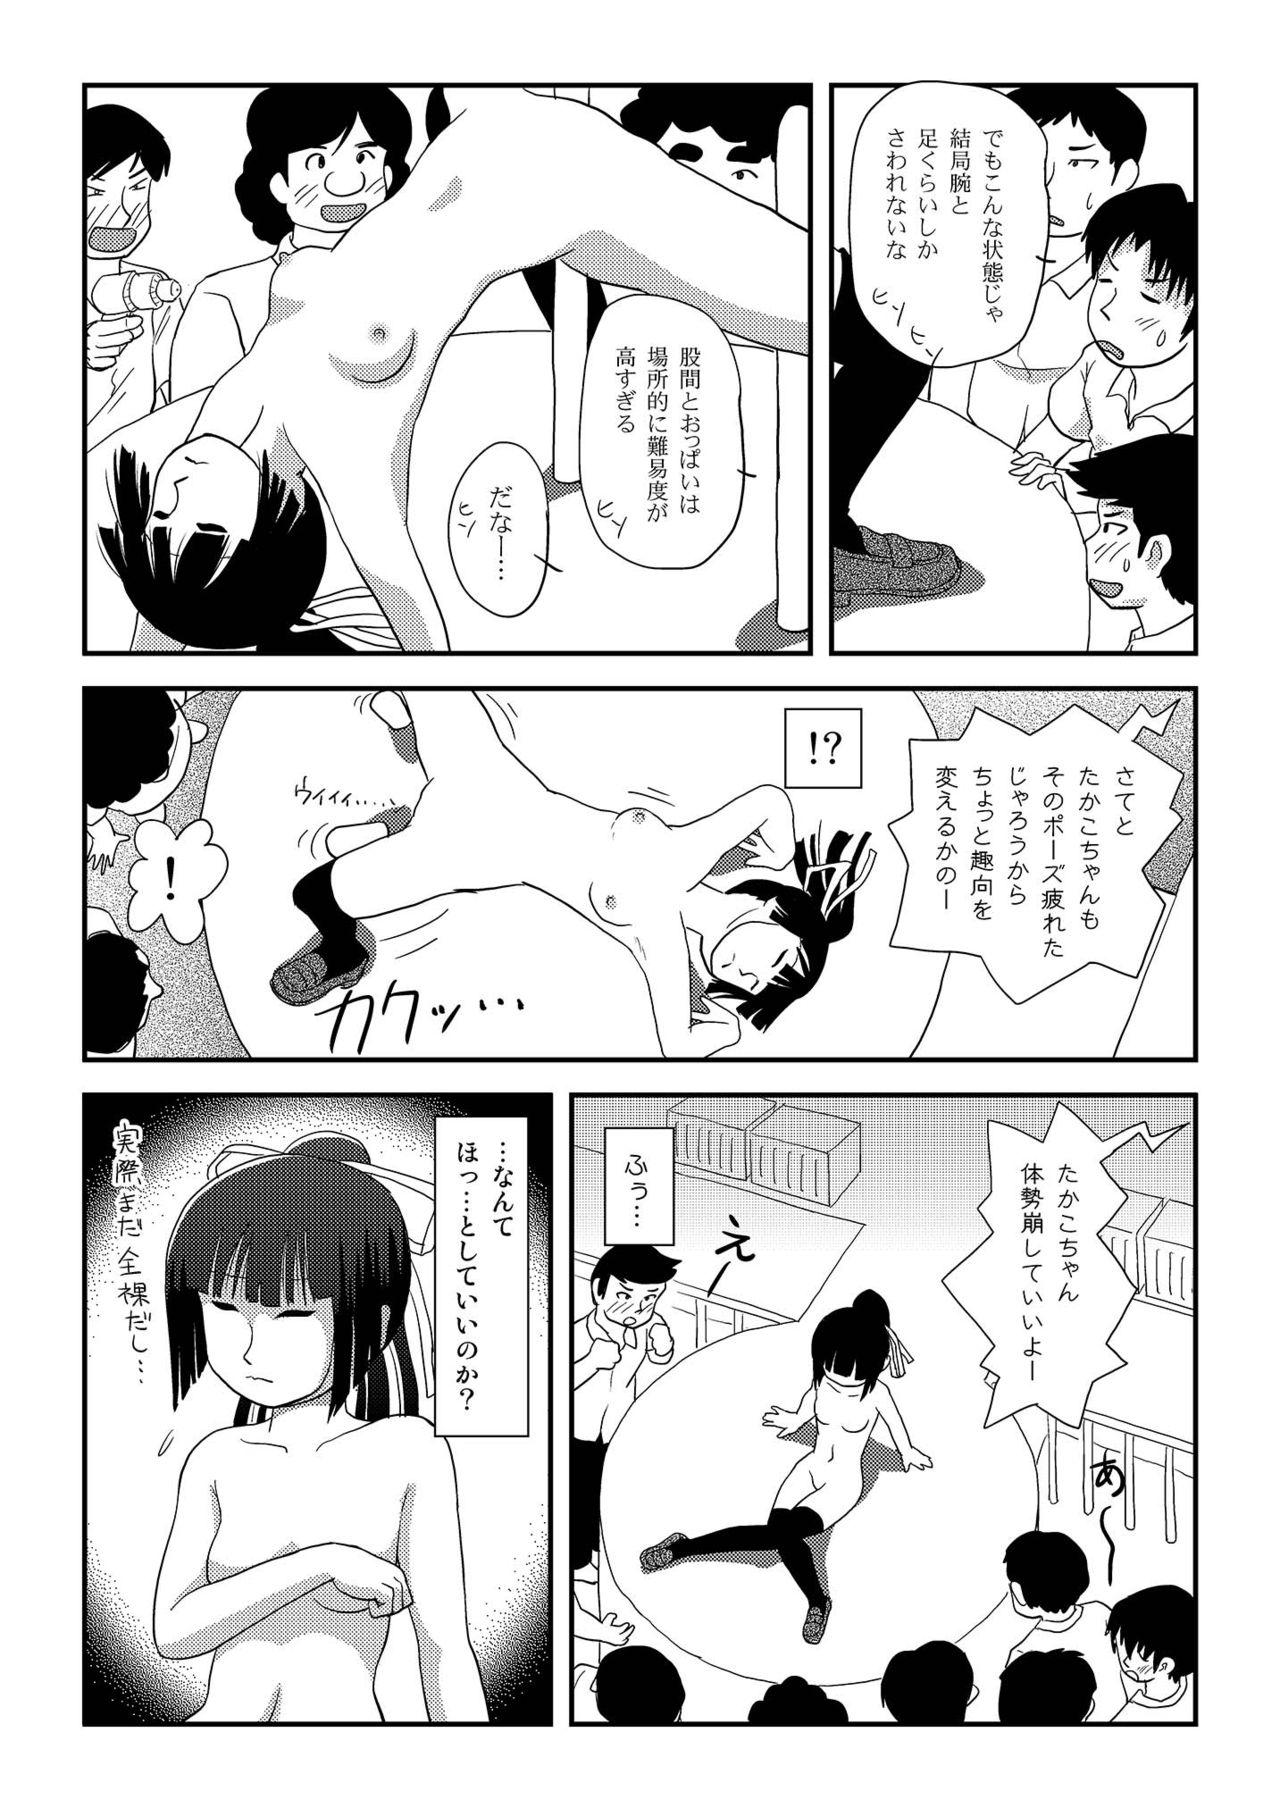 Mouth Sakura Kotaka no Roshutsubiyori 8 - Original Female - Page 8